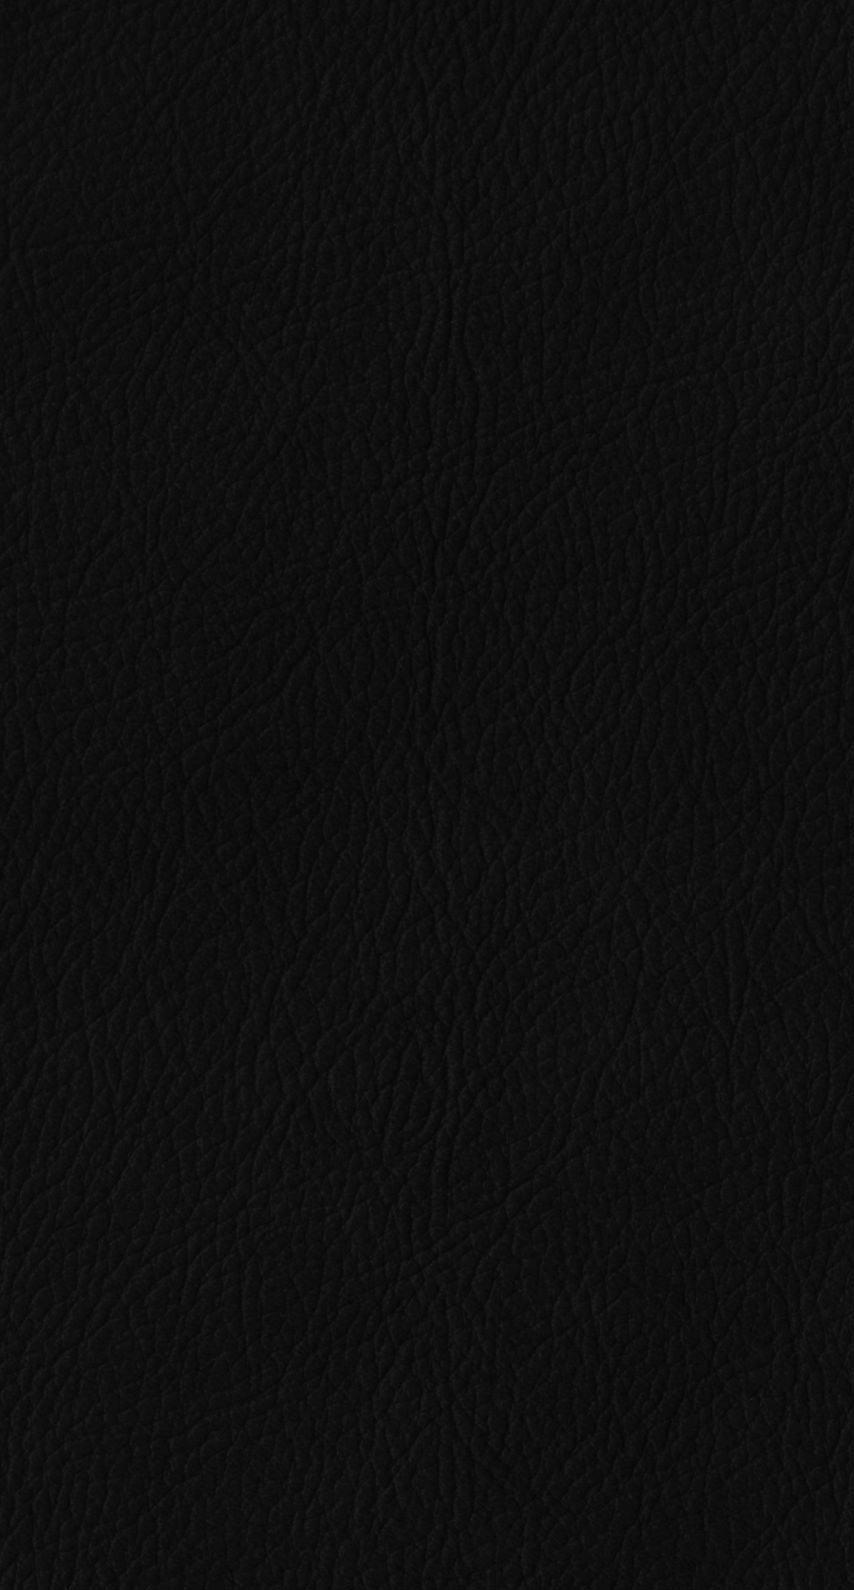 ベーリング海峡 野望 小さい Iphone6s 壁紙 黒 Urbansurvivalkits Net